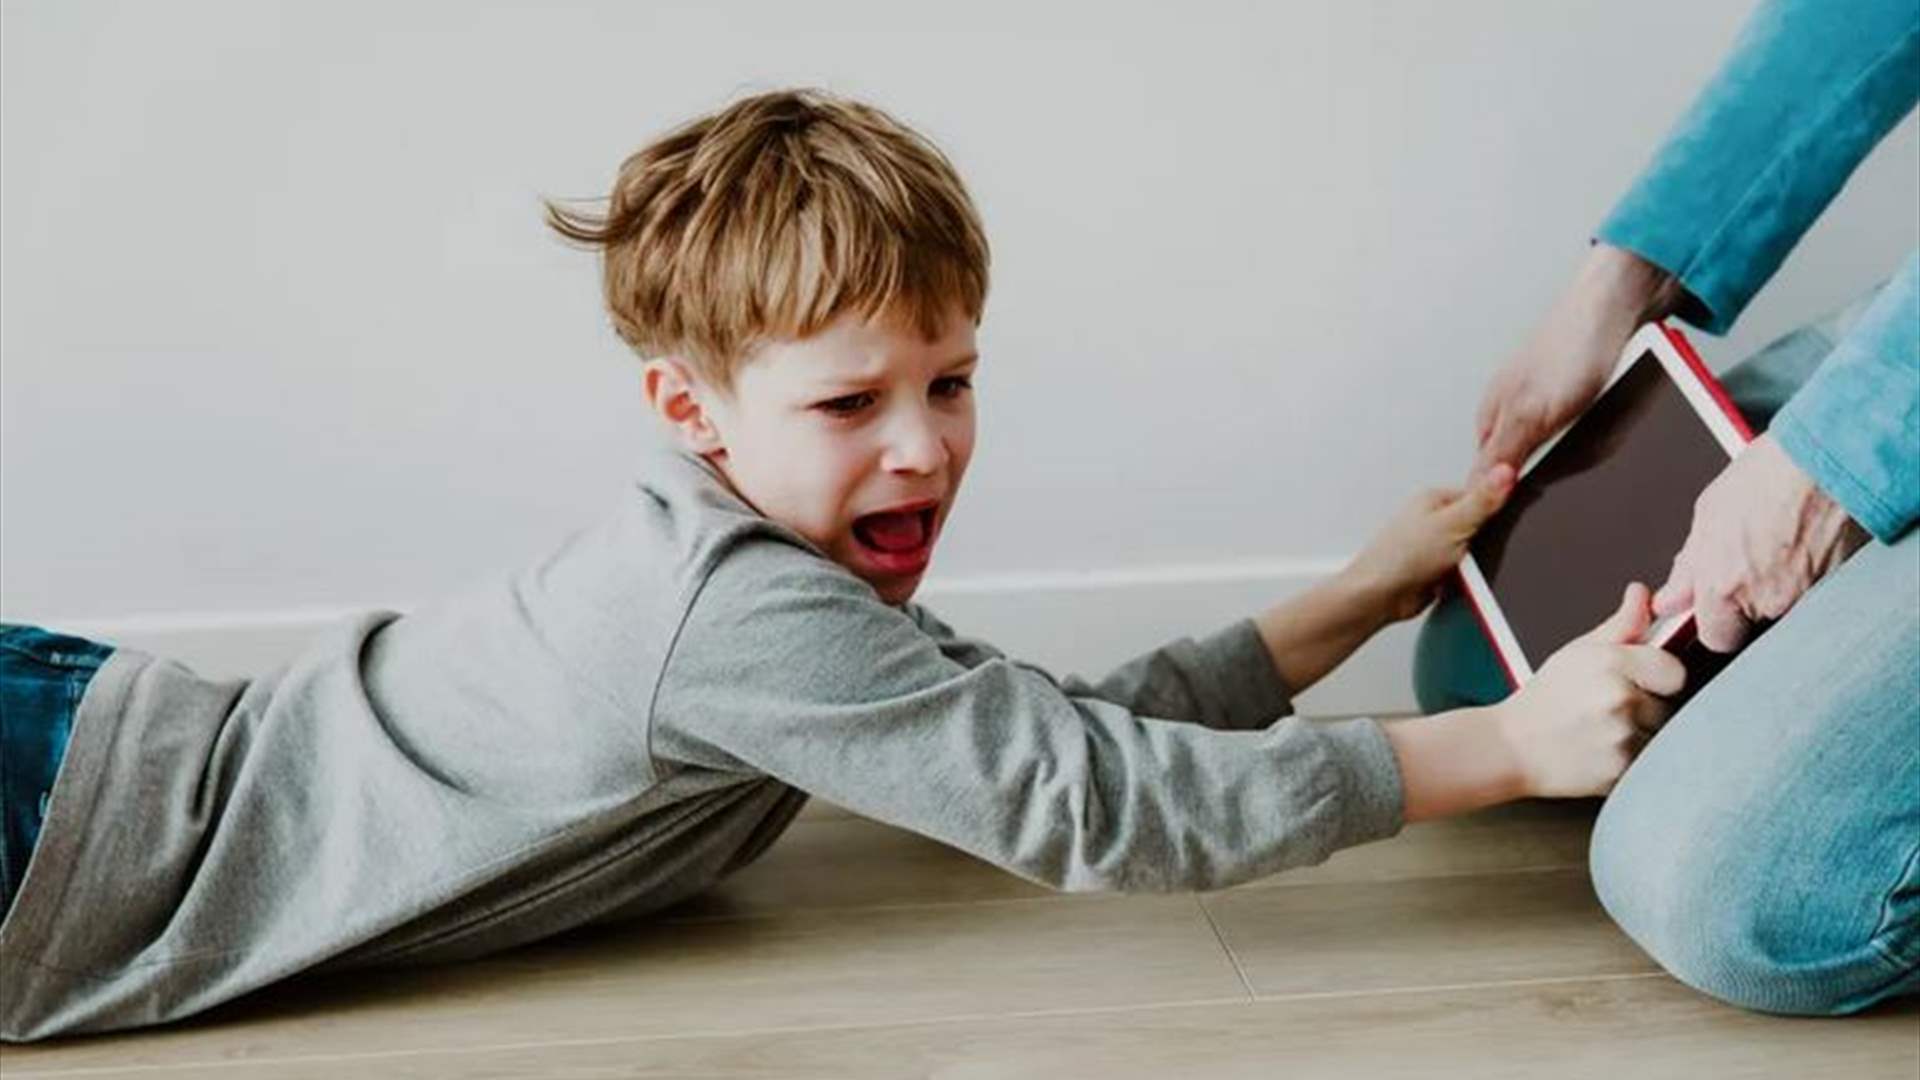 التعامل مع نوبات غضب الأطفال بهذه الطريقة يجعل سلوكهم أسوأ بكثير: إليكم الحلّ